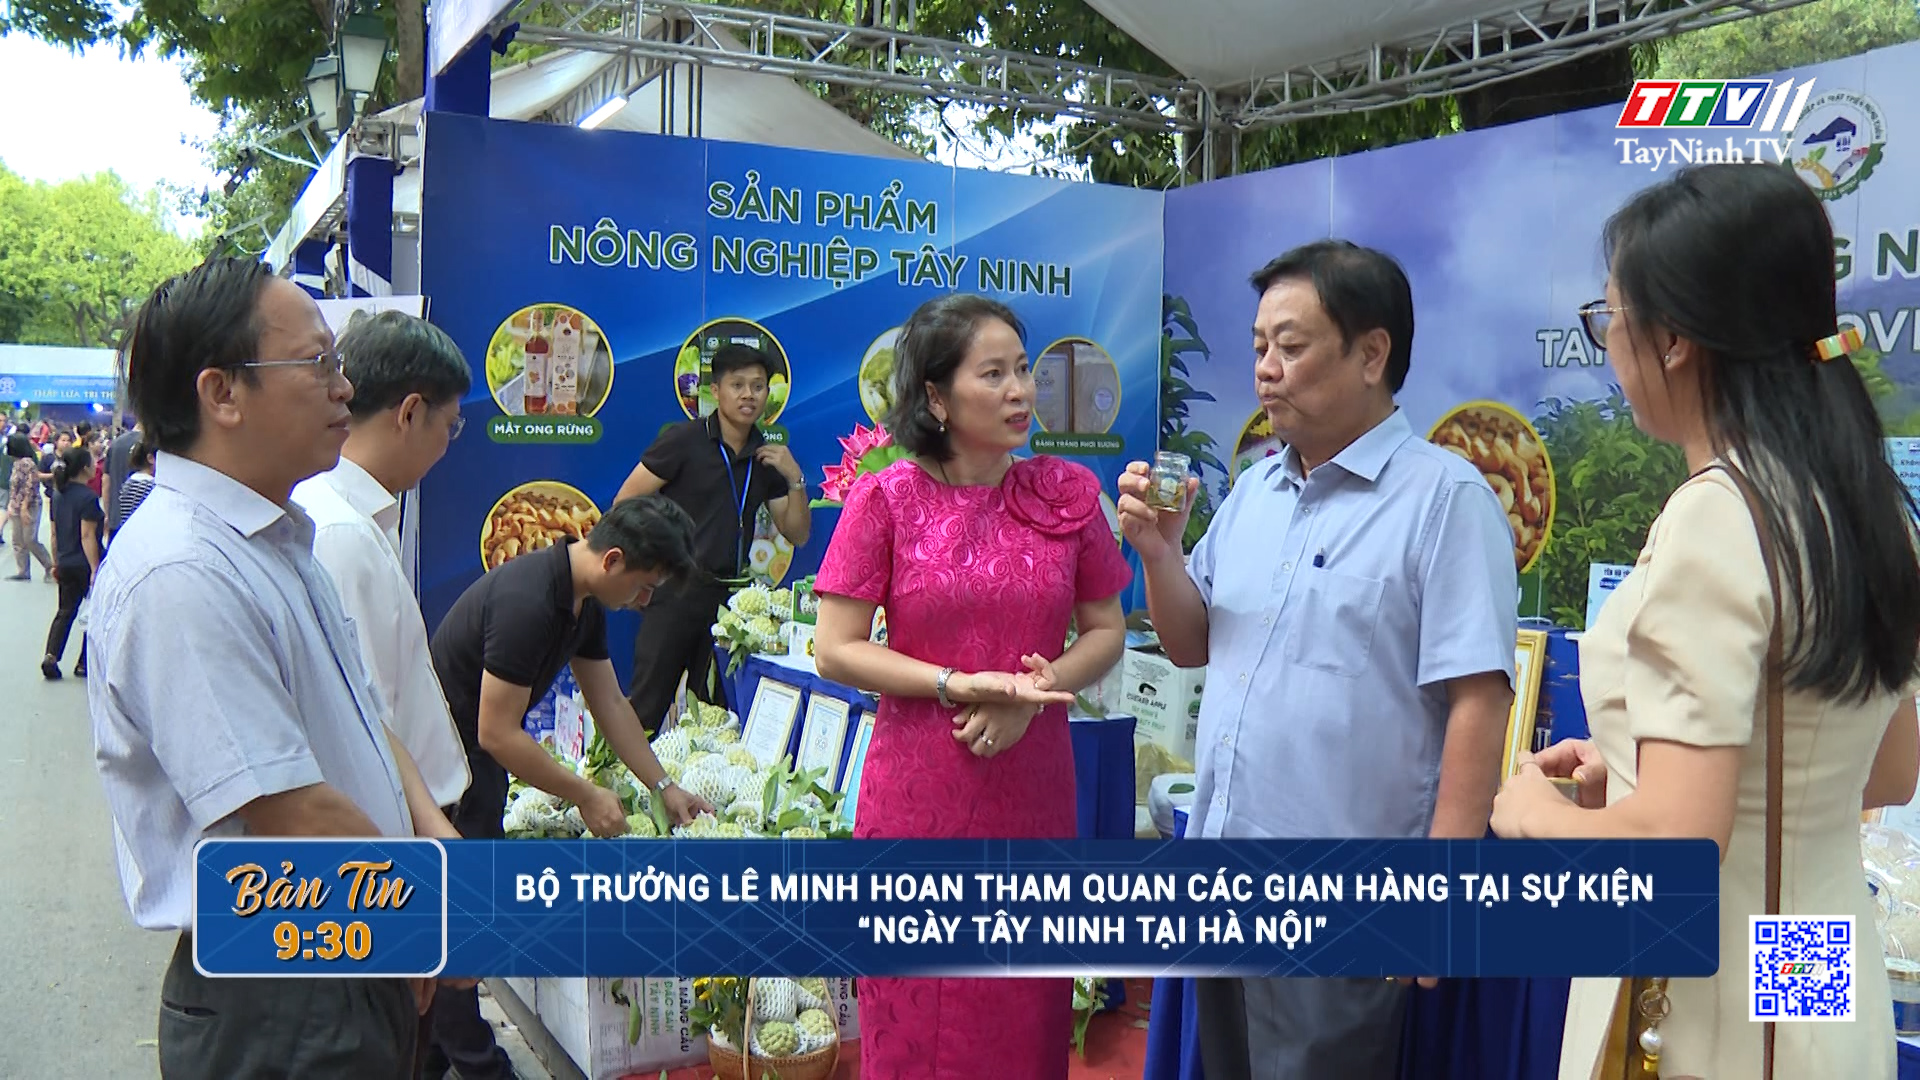 Bộ trưởng Lê Minh Hoan tham quan các gian hàng tại sự kiện “Ngày Tây Ninh tại Hà Nội” | TayNinhTV